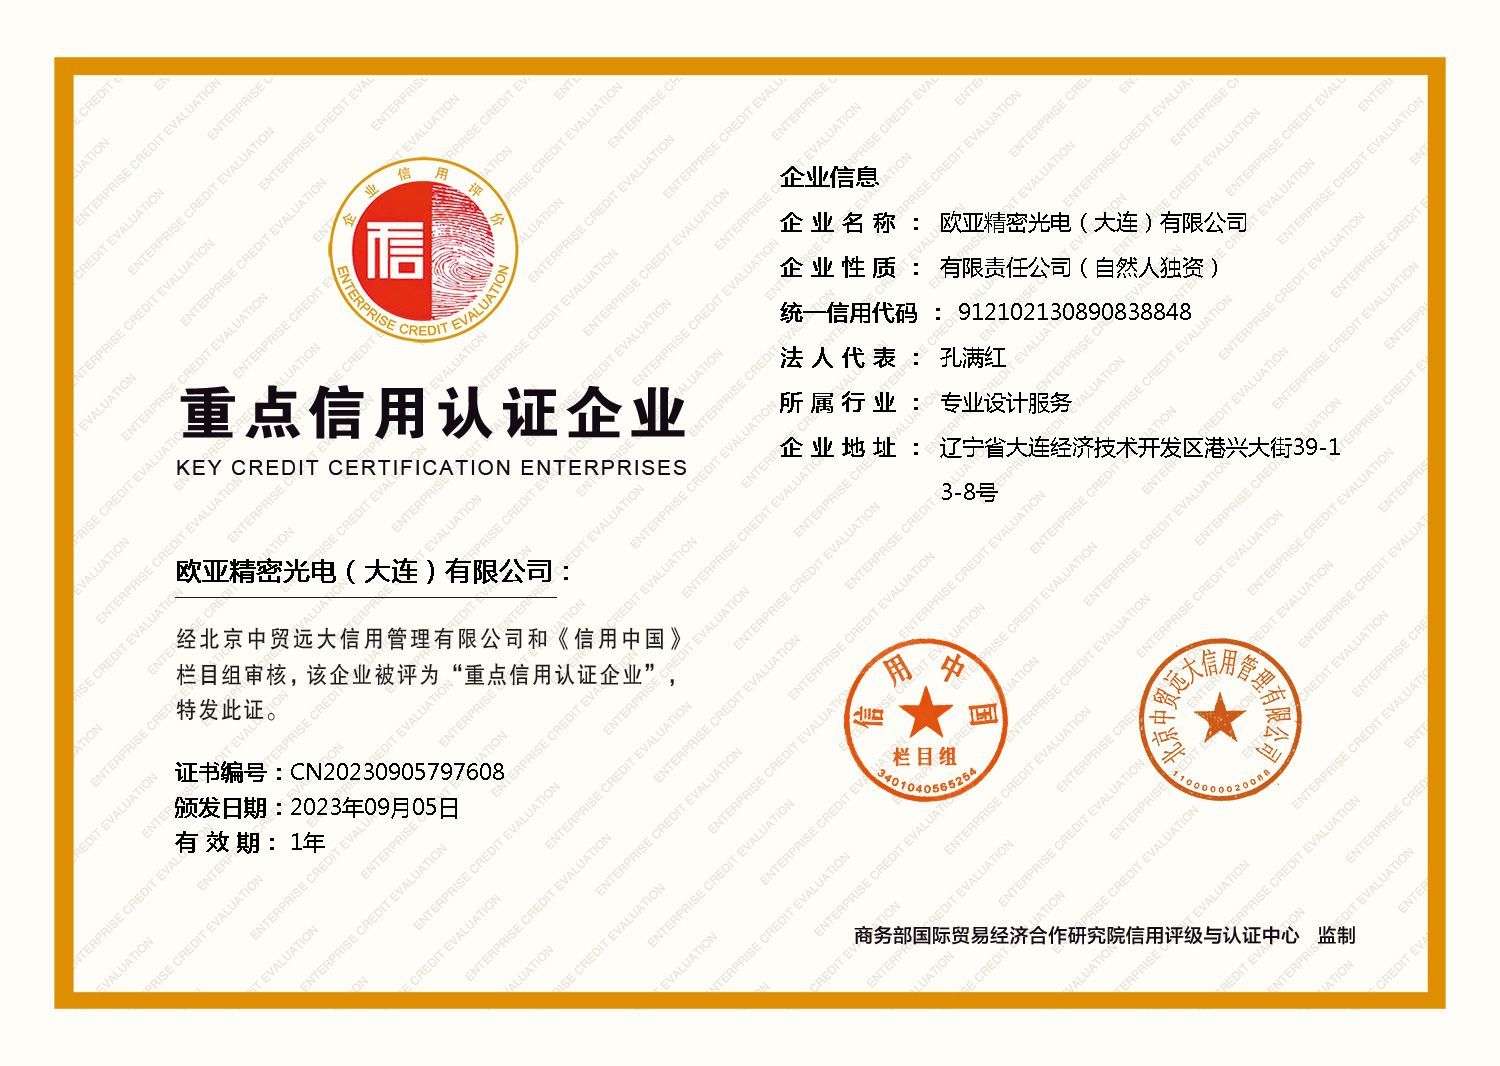 恭贺品牌拥有人荣获 信用中国-重点信用认证企业证书